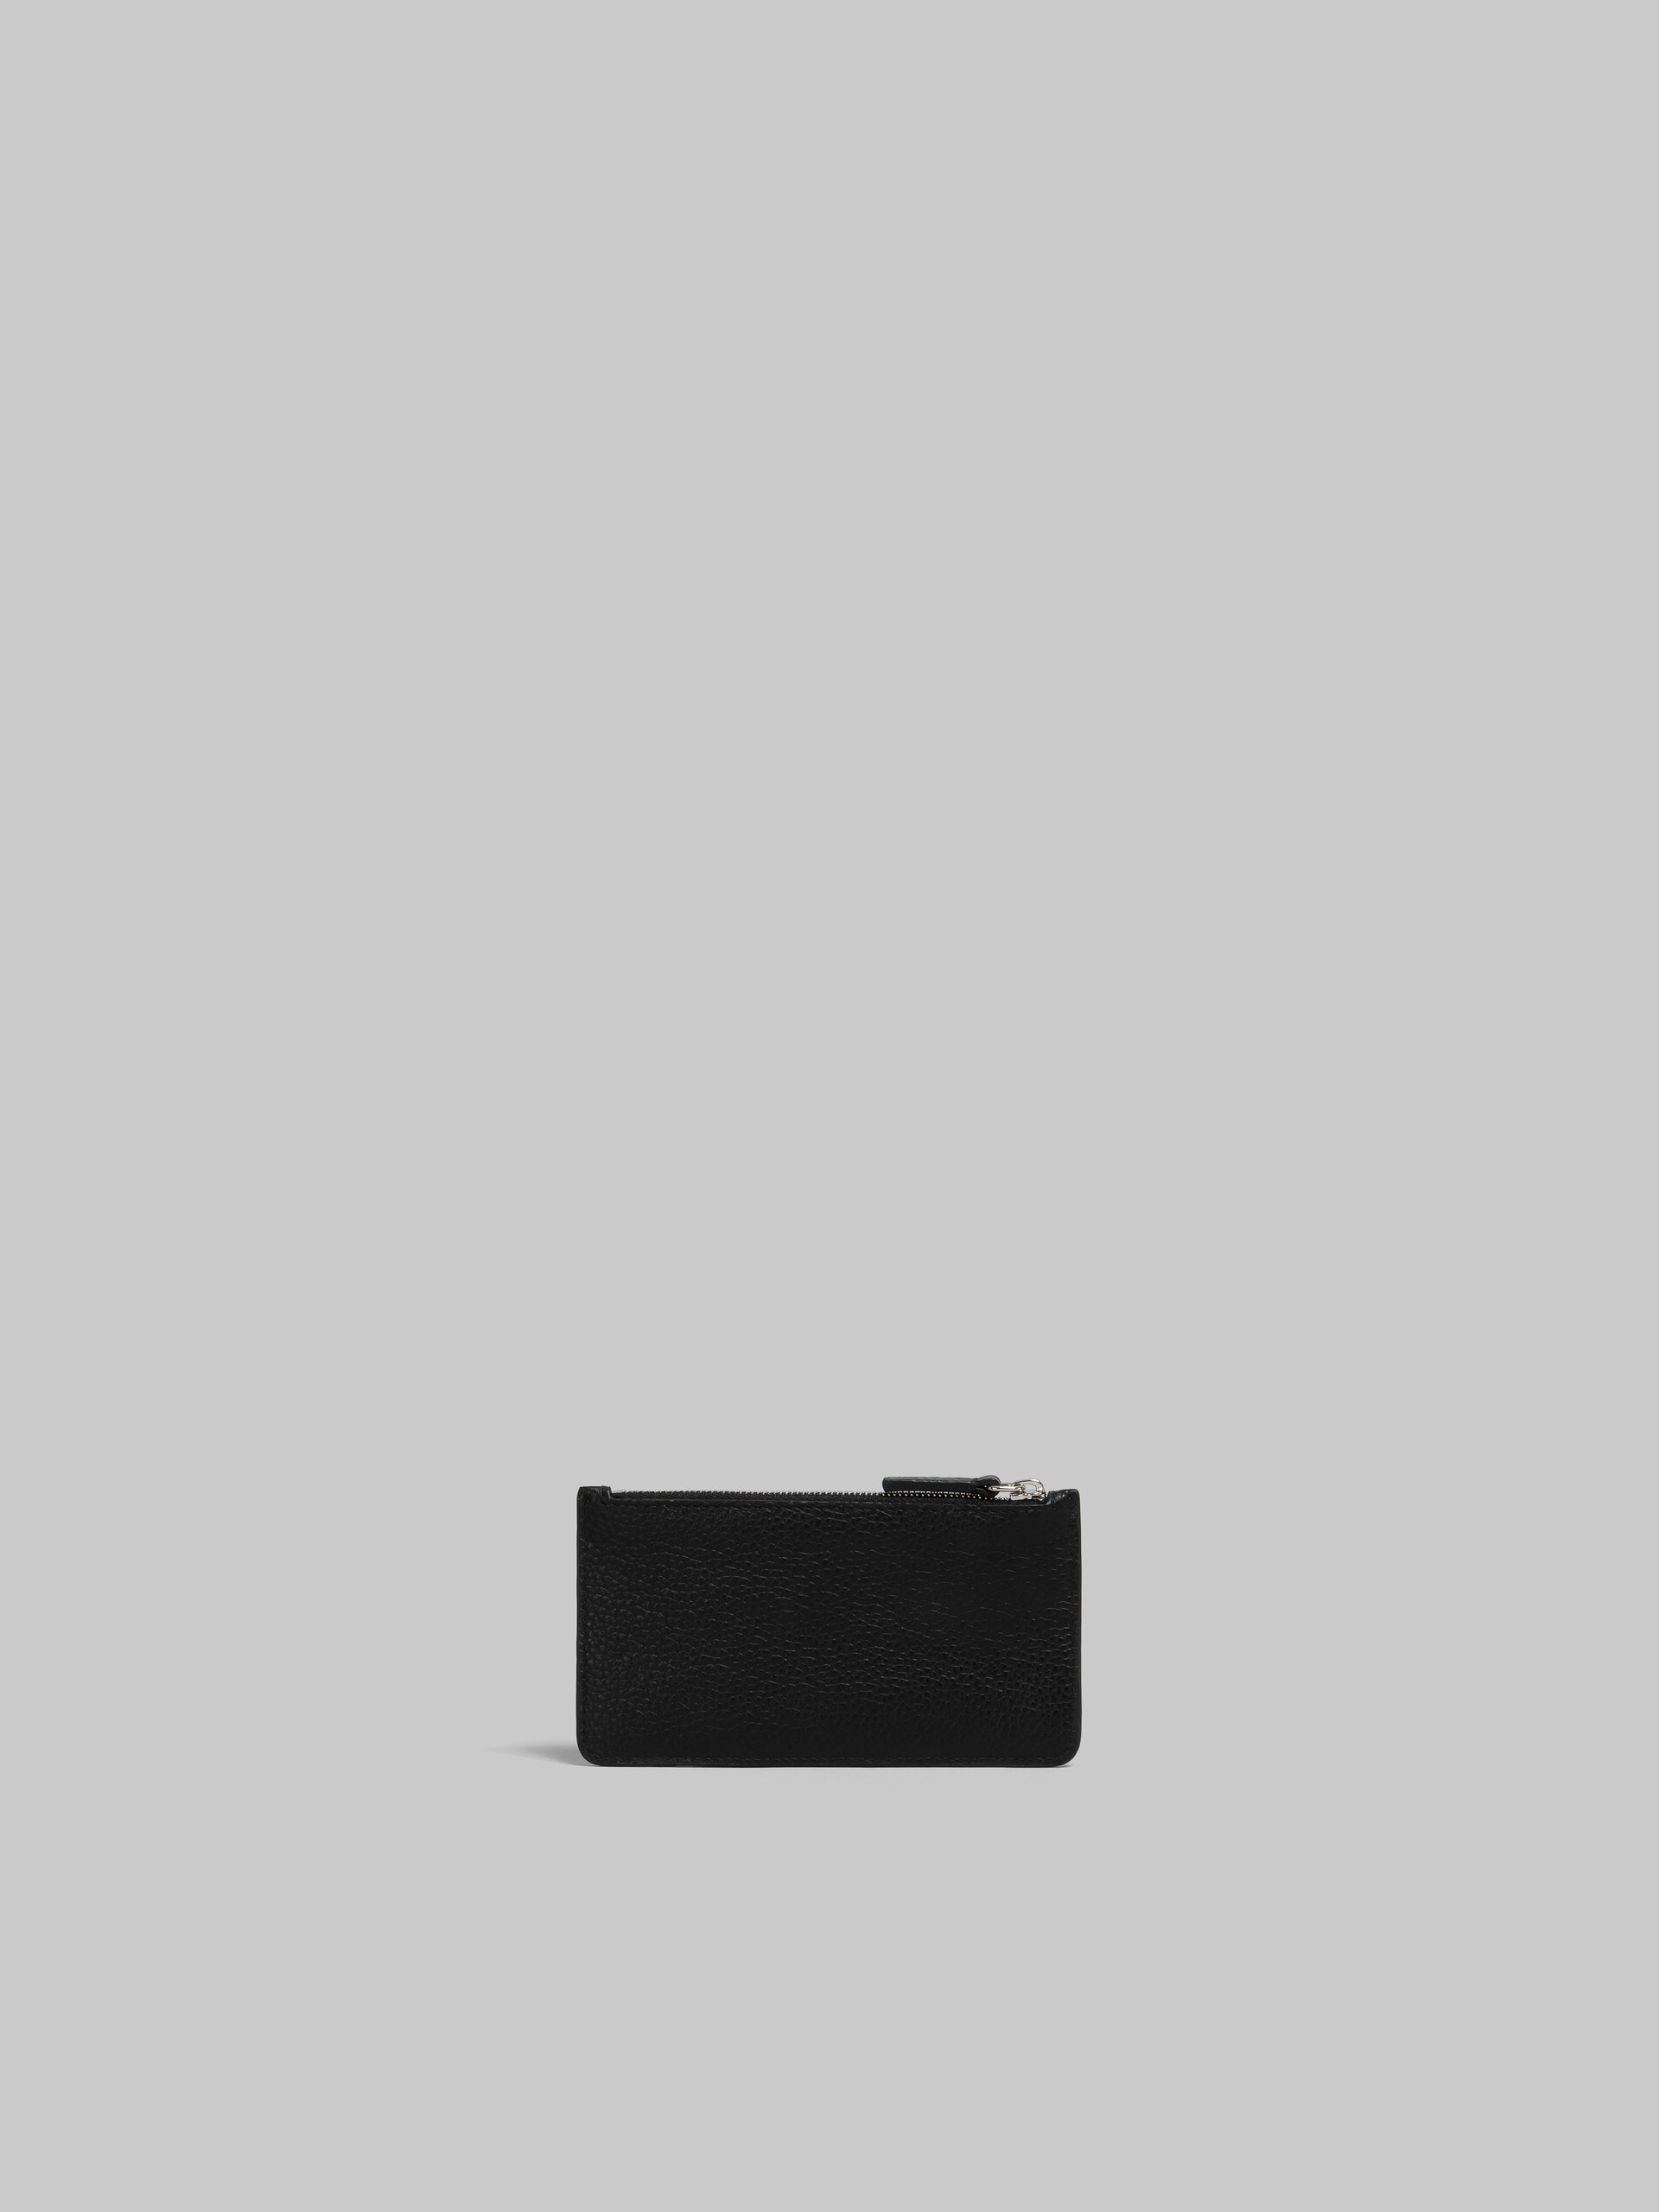 마르니 멘딩 장식 블랙 가죽 카드 케이스 - 지갑 - Image 3